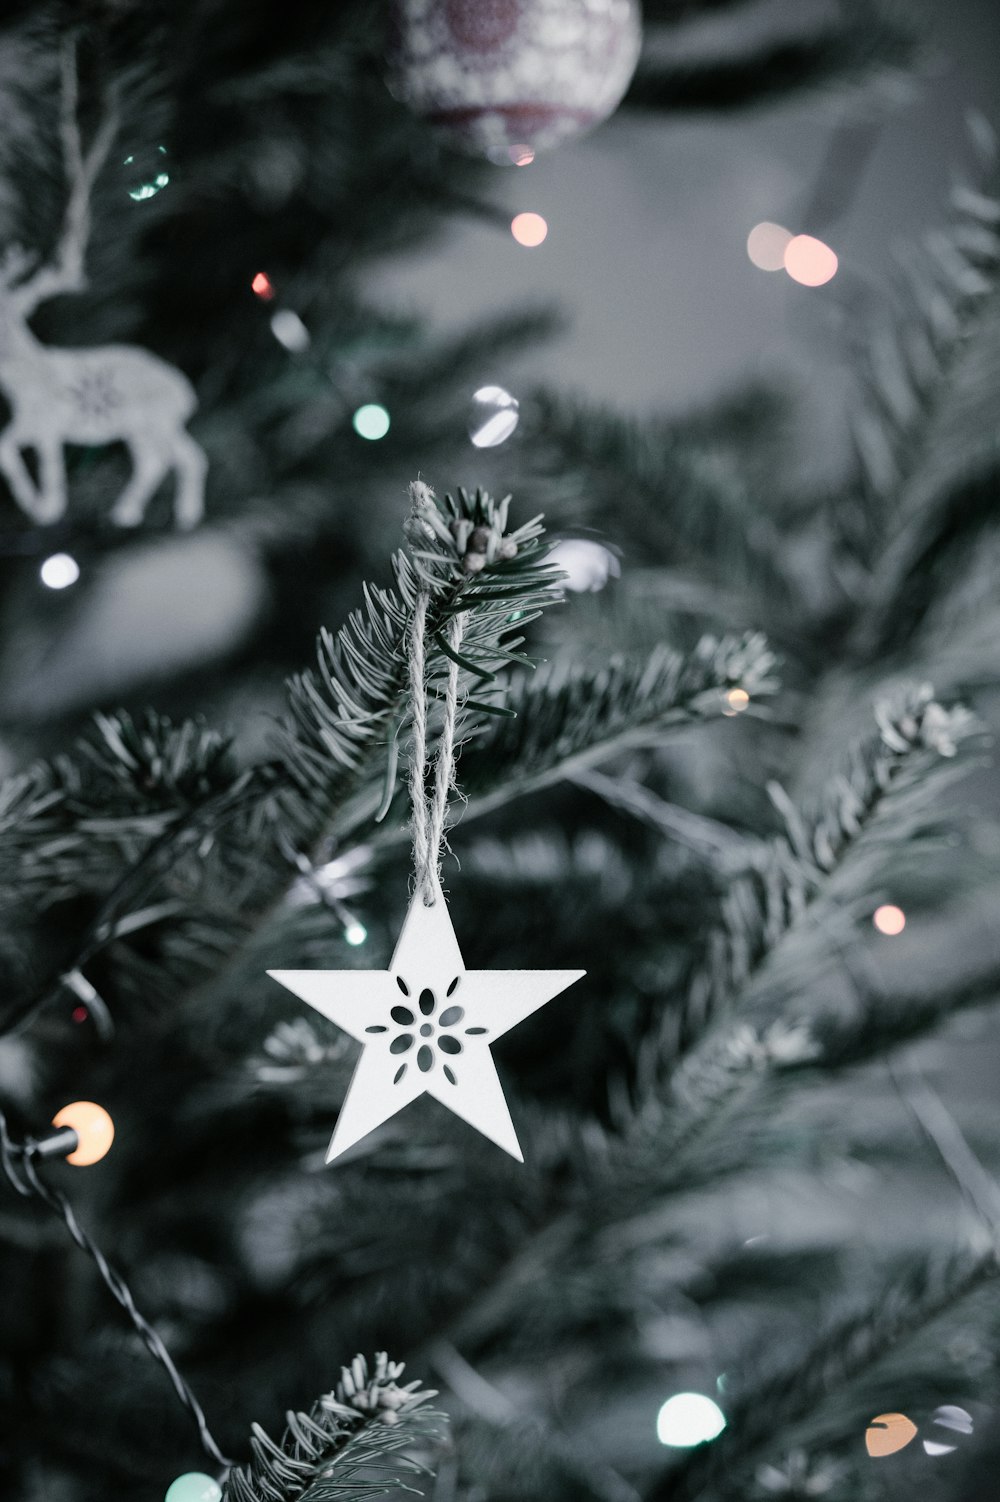 Stern Weihnachtsschmuck hängt im Weihnachtsbaum